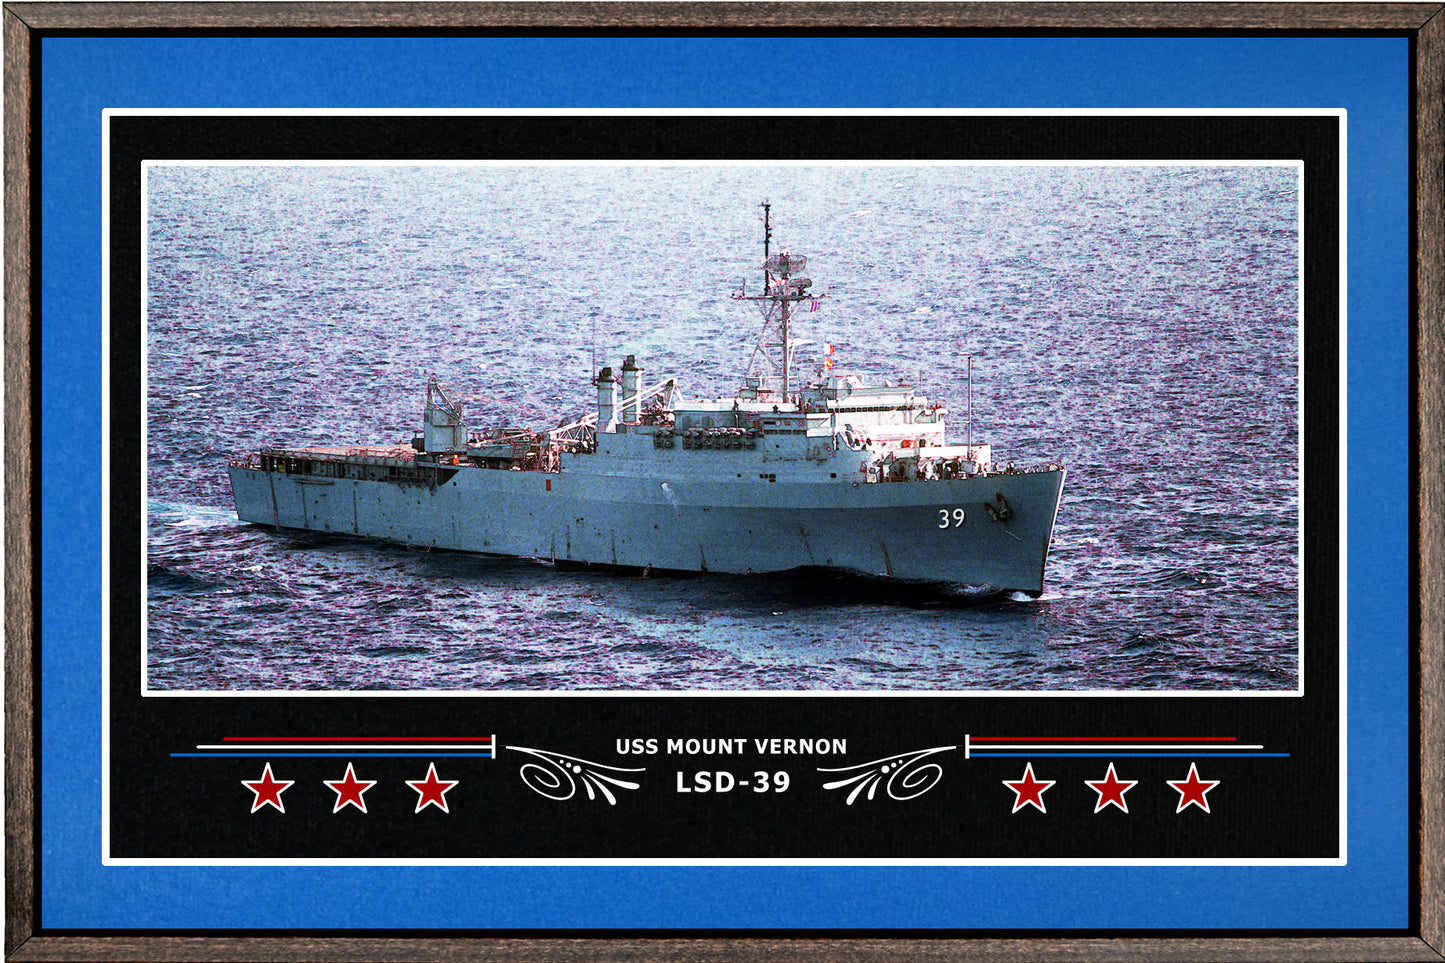 USS MOUNT VERNON LSD 39 BOX FRAMED CANVAS ART BLUE